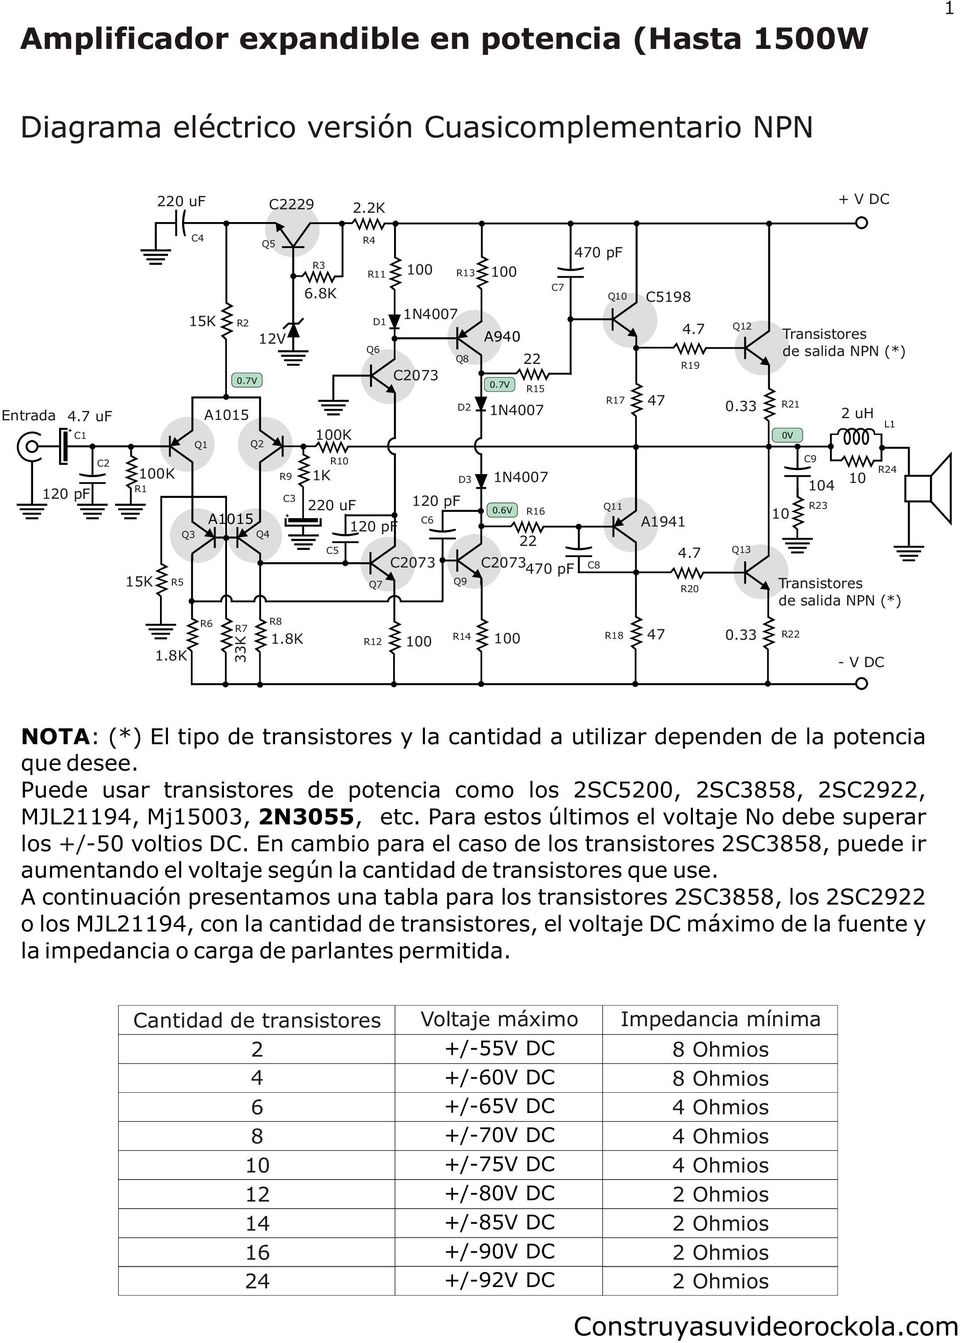 6V Q11 R16 C8 C5198 R19 47 A1941 R20 Q12 Q13 Transistores de salida NPN (*) 0V 10 R21 C9 104 R23 2 uh 10 L1 R24 Transistores de salida NPN (*) R6 R7 33K R8 R14 R18 47 R12 R22 - V DC NOTA: (*) El tipo